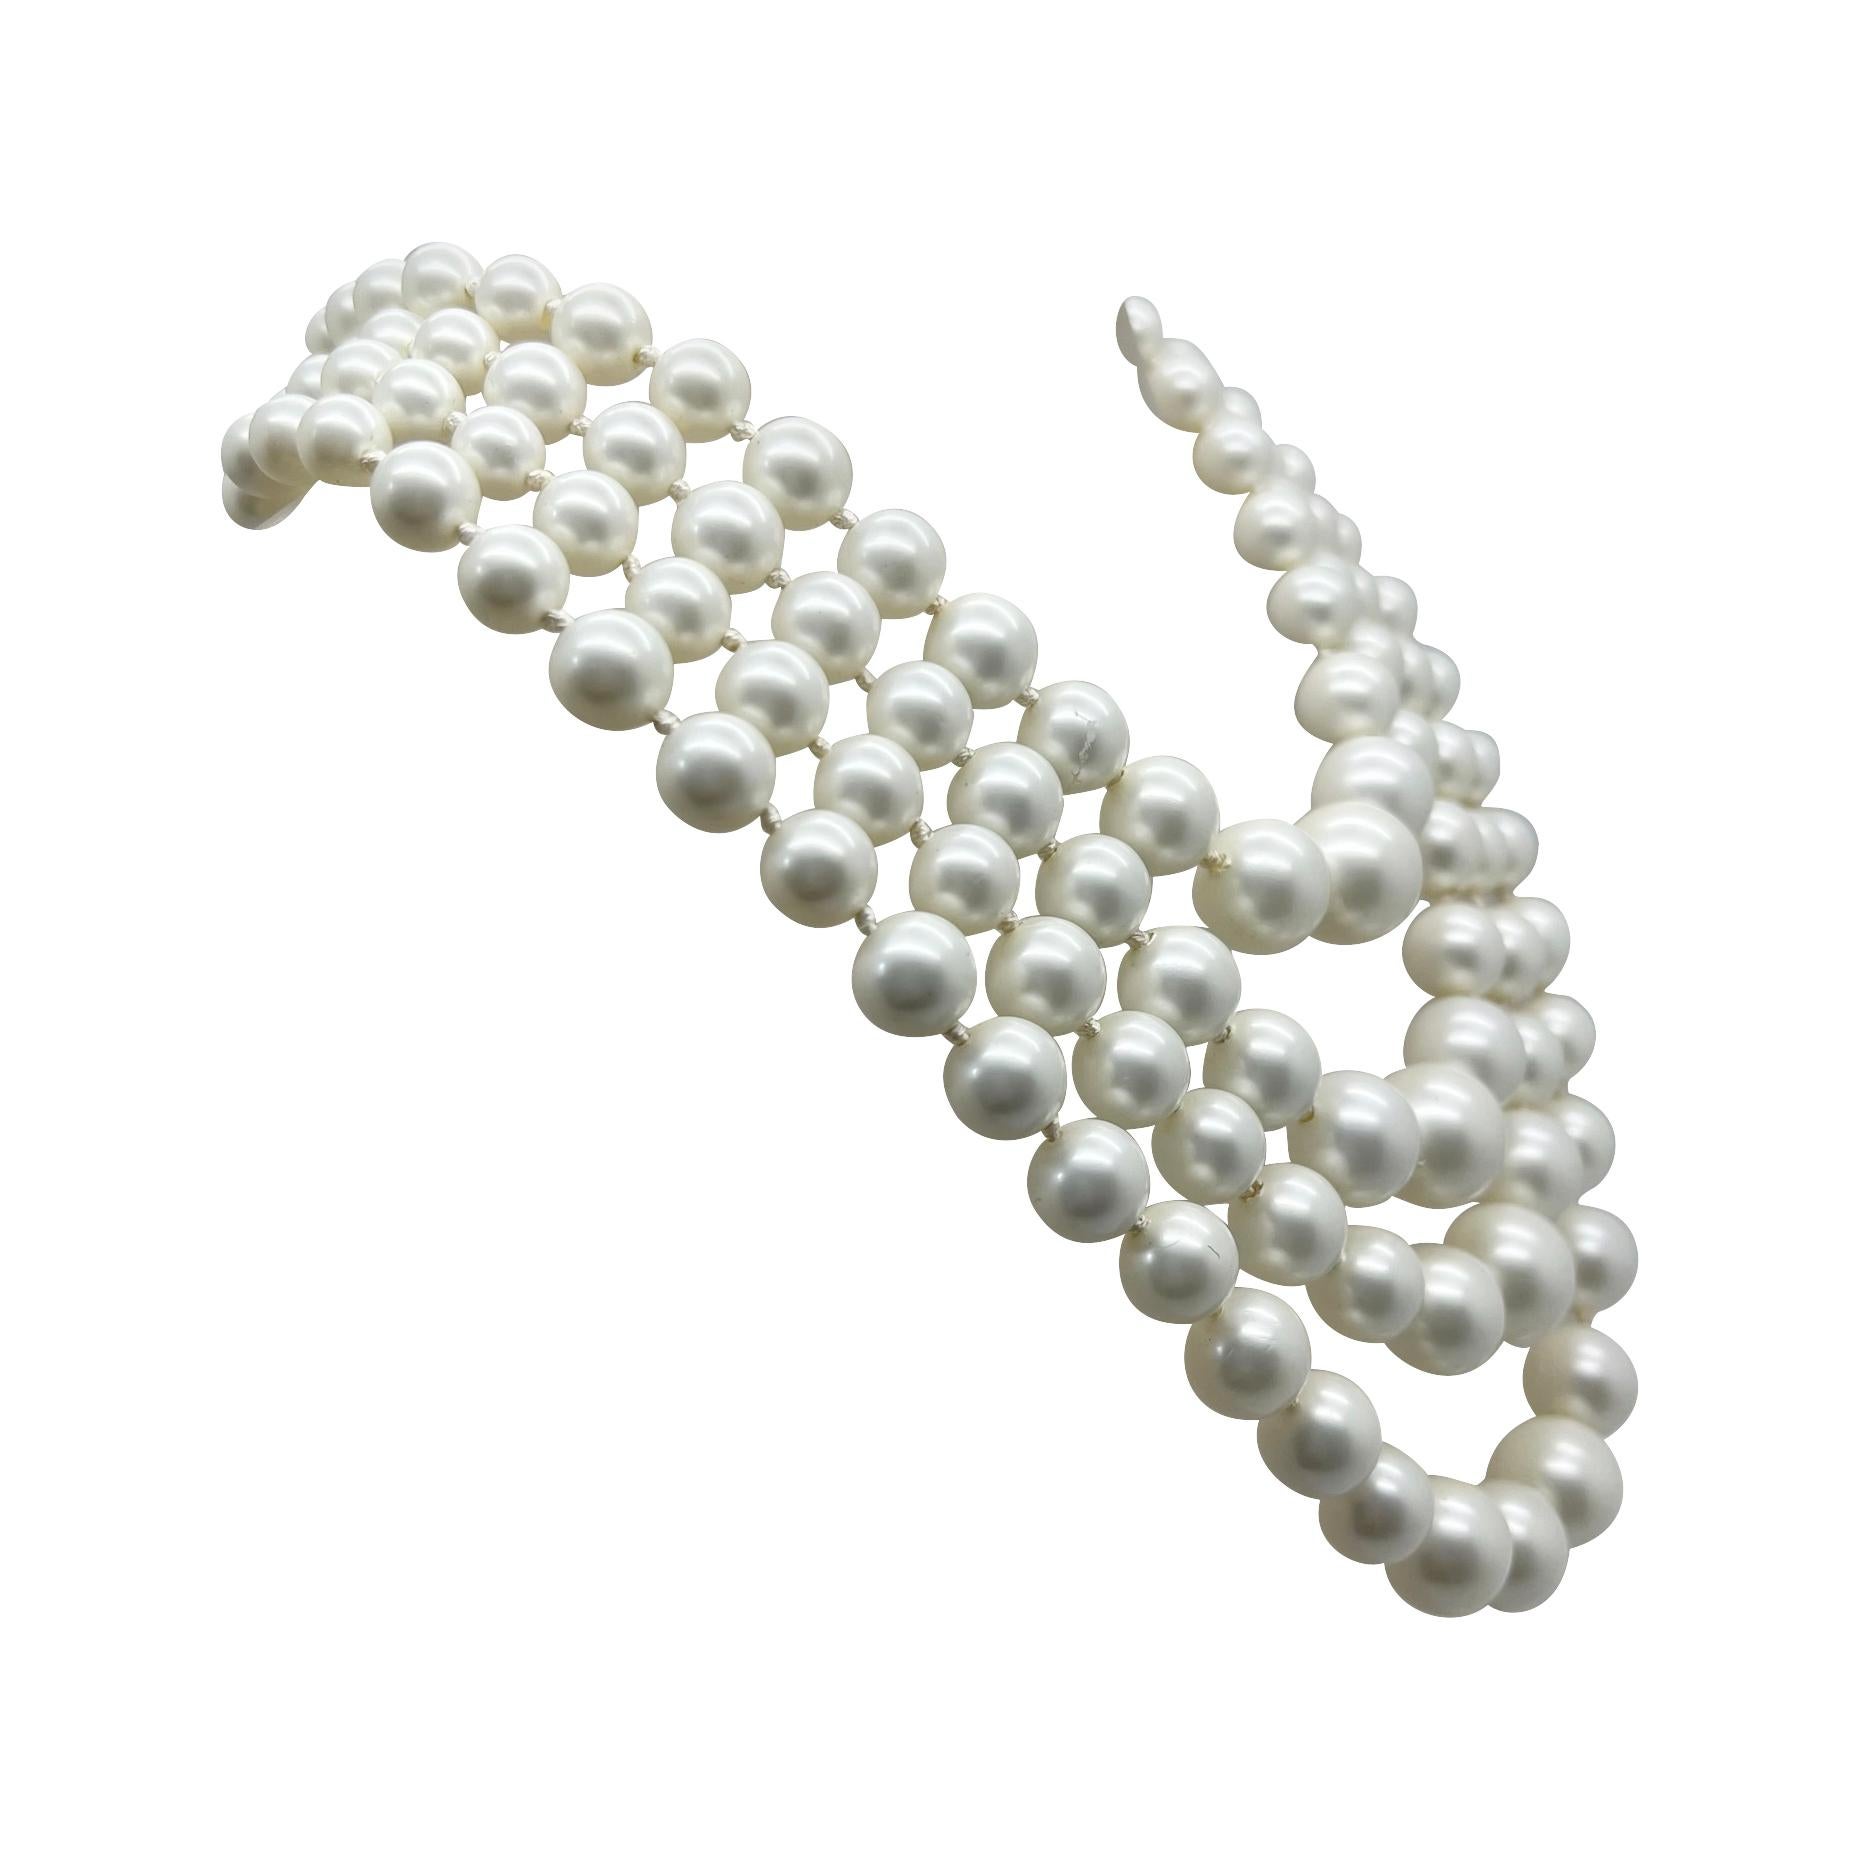 Ein wunderbar schickes Vintage-Richelieu-Perlenhalsband. Vier fabelhafte Reihen glänzender Perlen, die einen zeitlosen Stil mit Wirkung versprühen.
Richelieu. Das 1911 in New York gegründete Unternehmen Richelieu wurde in den 1940er und 50er Jahren